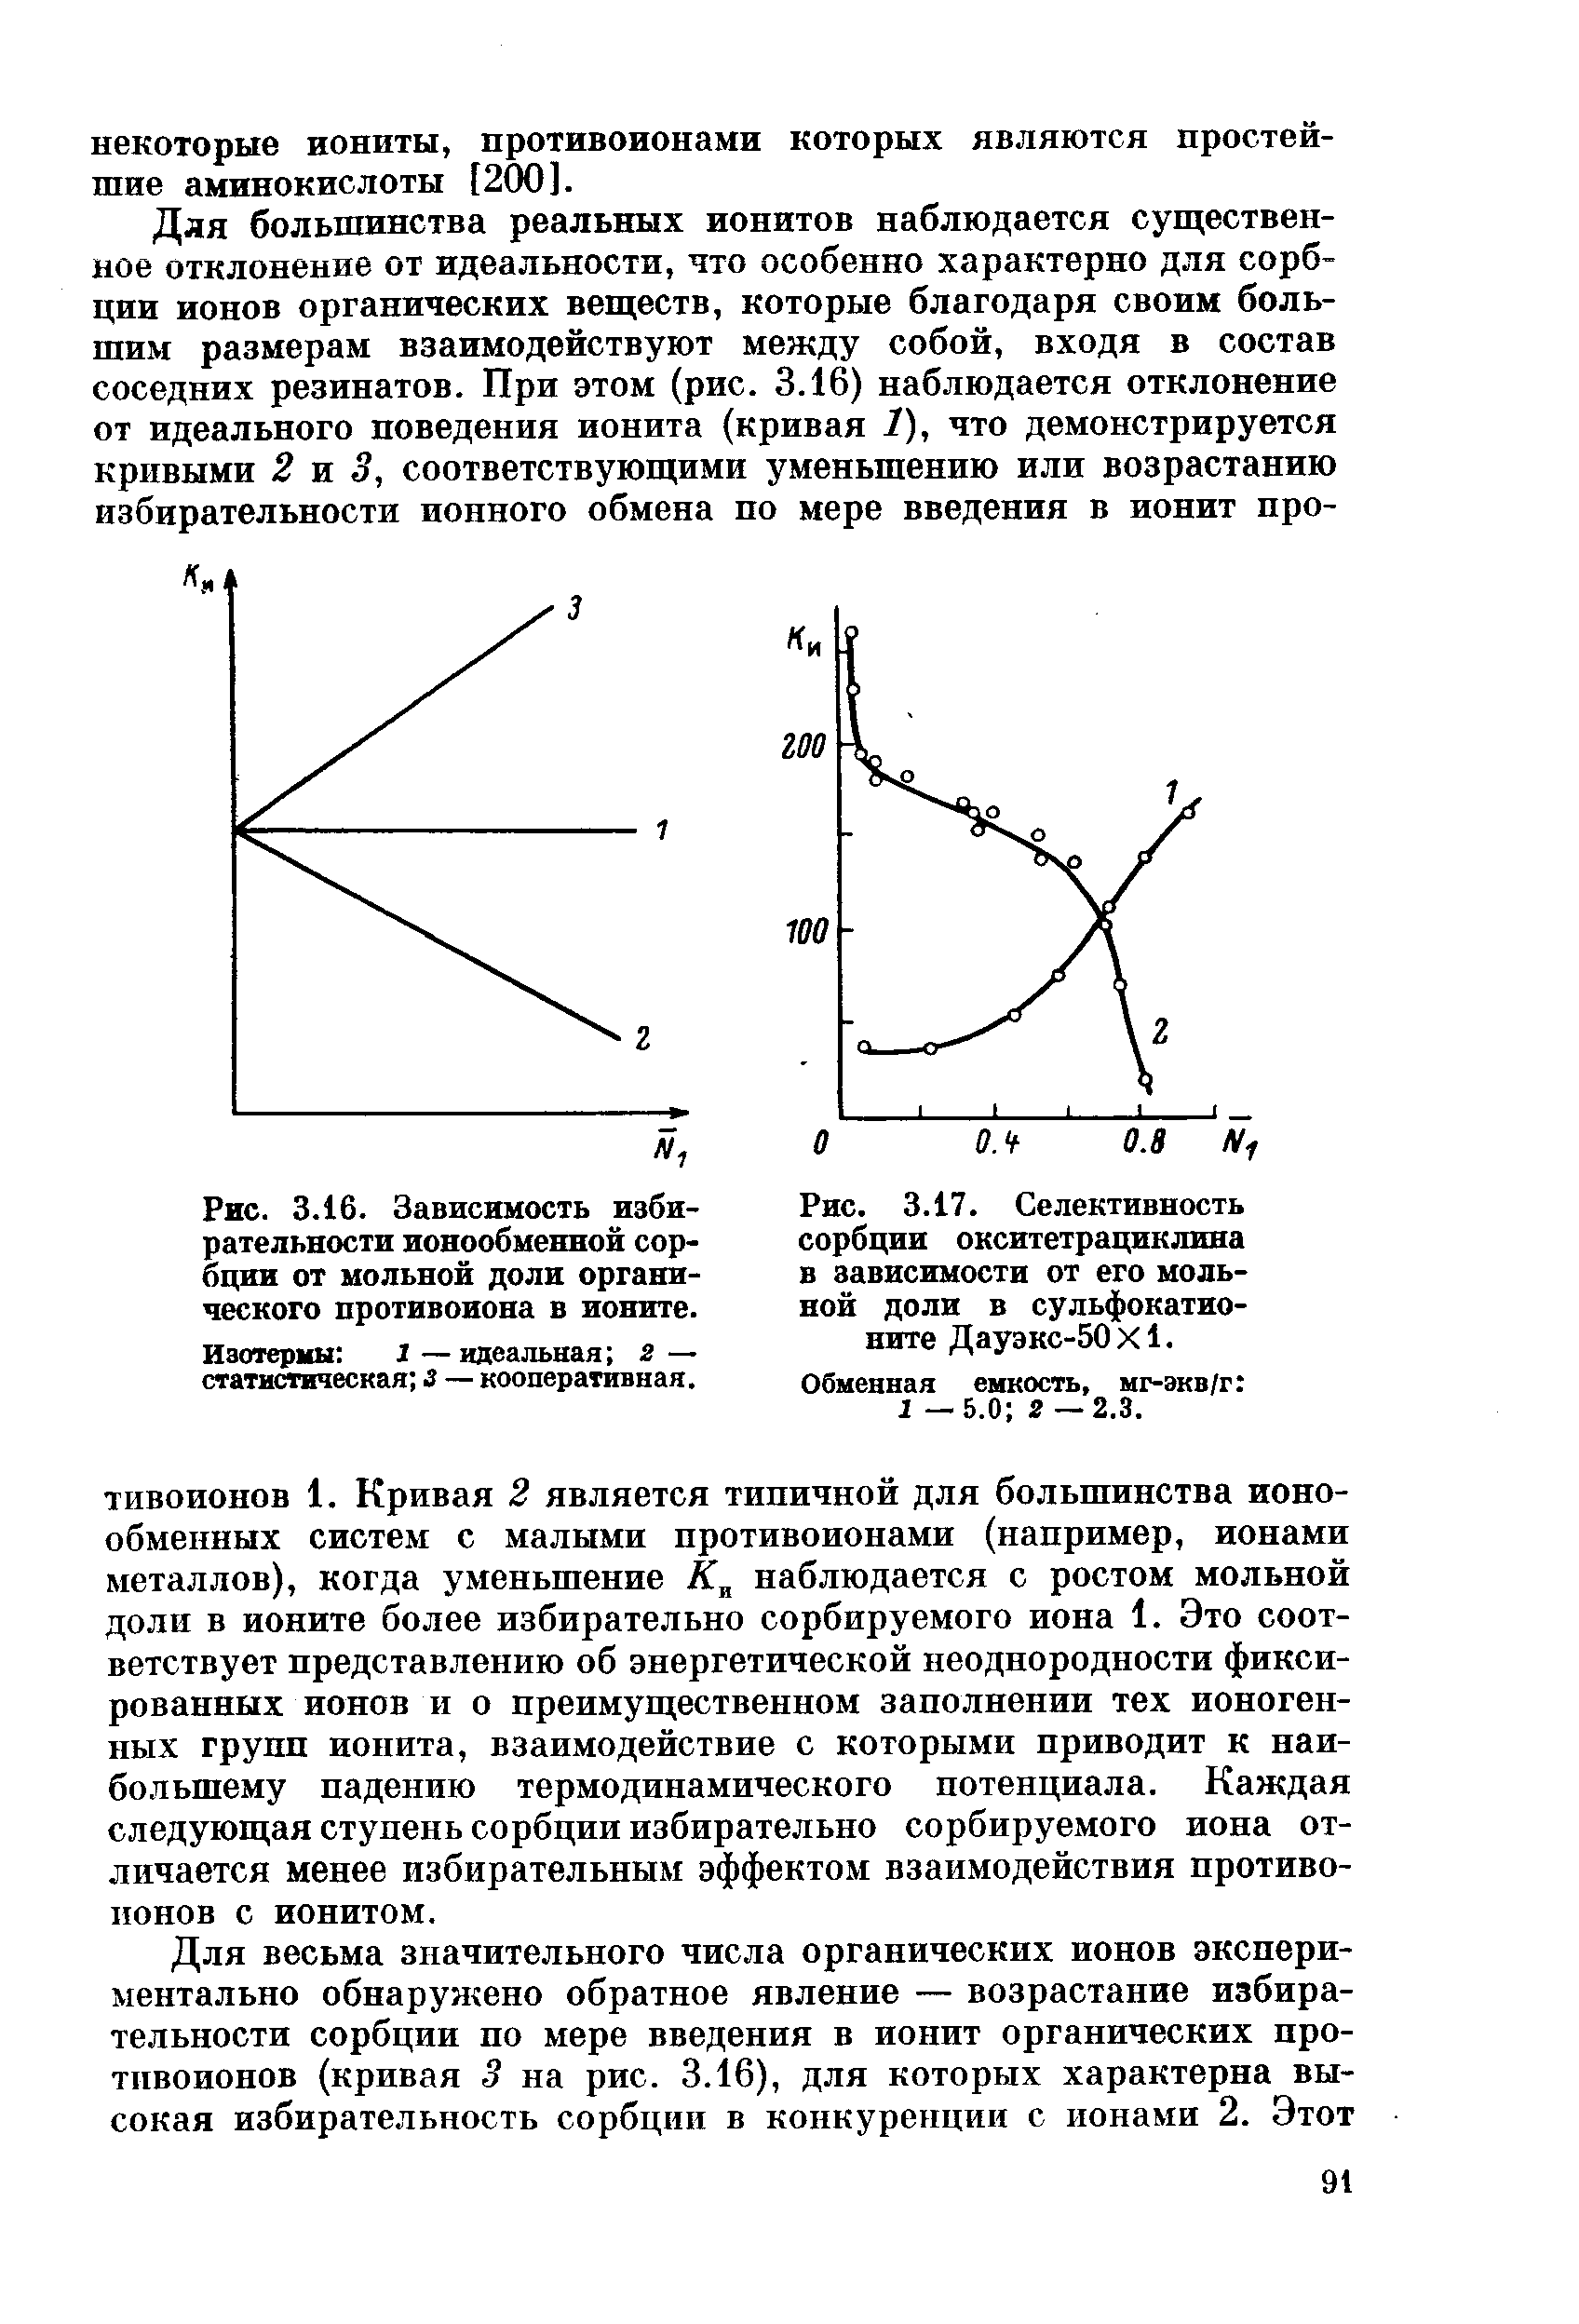 Изотермы X —идеальная 2 — статистическая 3 — кооперативная.